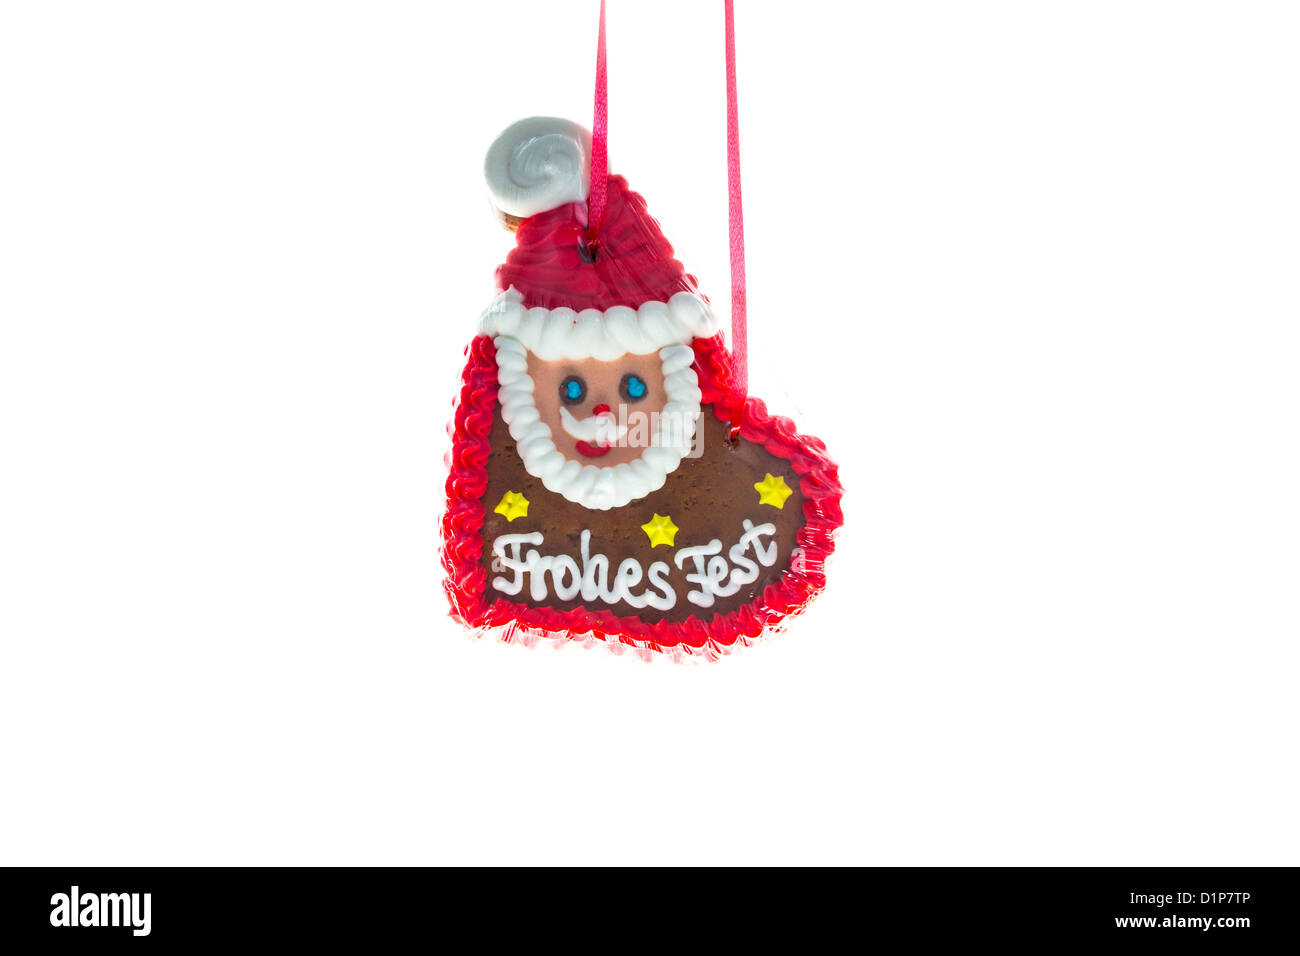 Lebkuchen, Herz, Santa Claus, wünscht frohe Weihnachten in deutscher Sprache. Stockfoto